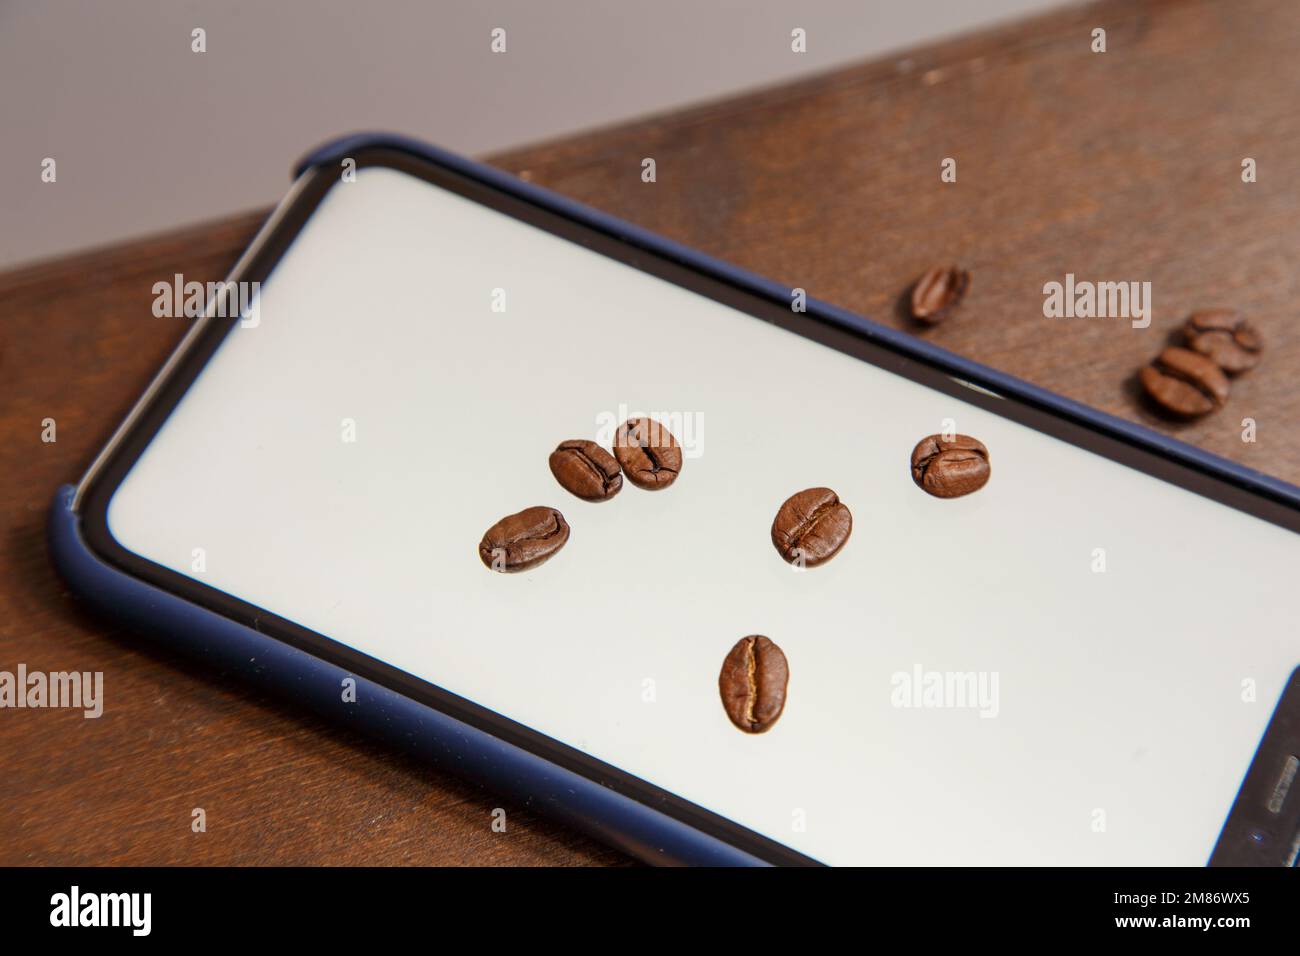 Der Türke steht auf einem Laptop, Kaffeebohnen sind überall verstreut und ein Telefon mit einer weißen Farbe im Inneren. Hochwertiges Foto Stockfoto